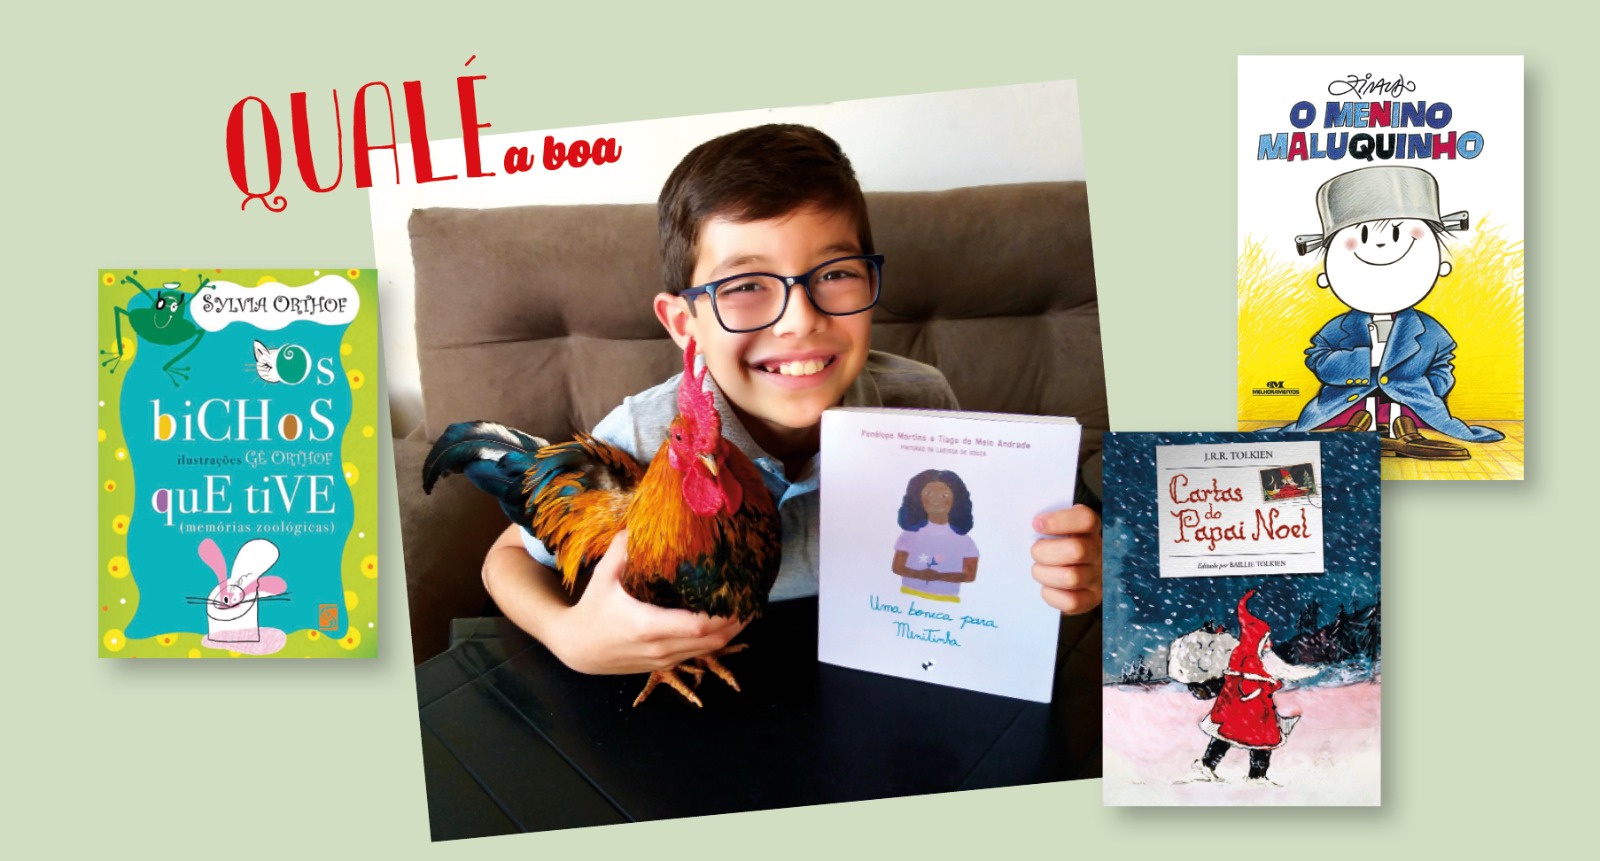 Qualé a boa: Gustavo, de 10 anos, já leu mais de mil livros